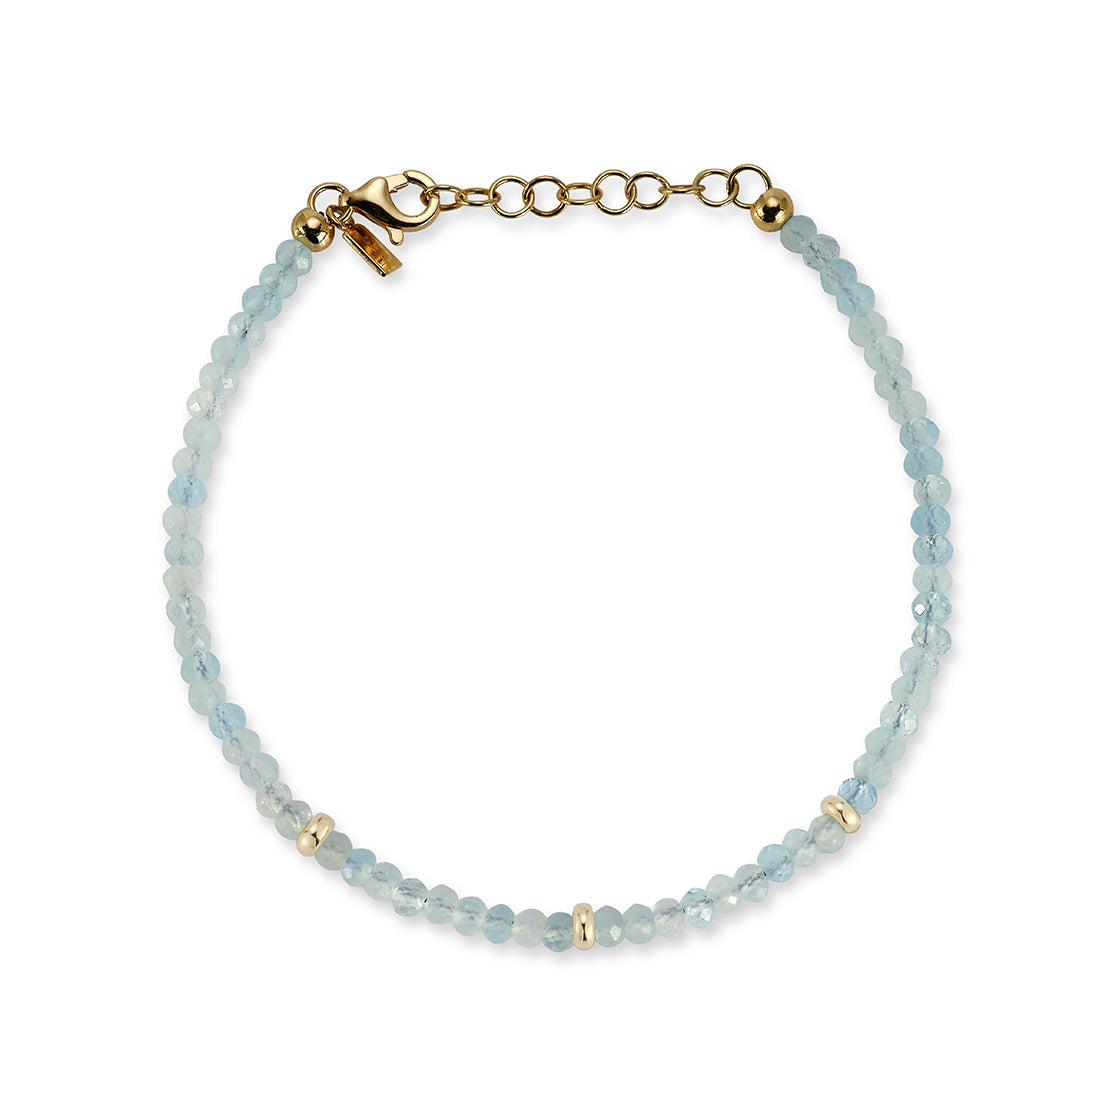 The Beaded Bracelet Gift Set - Aquamarine / March Option